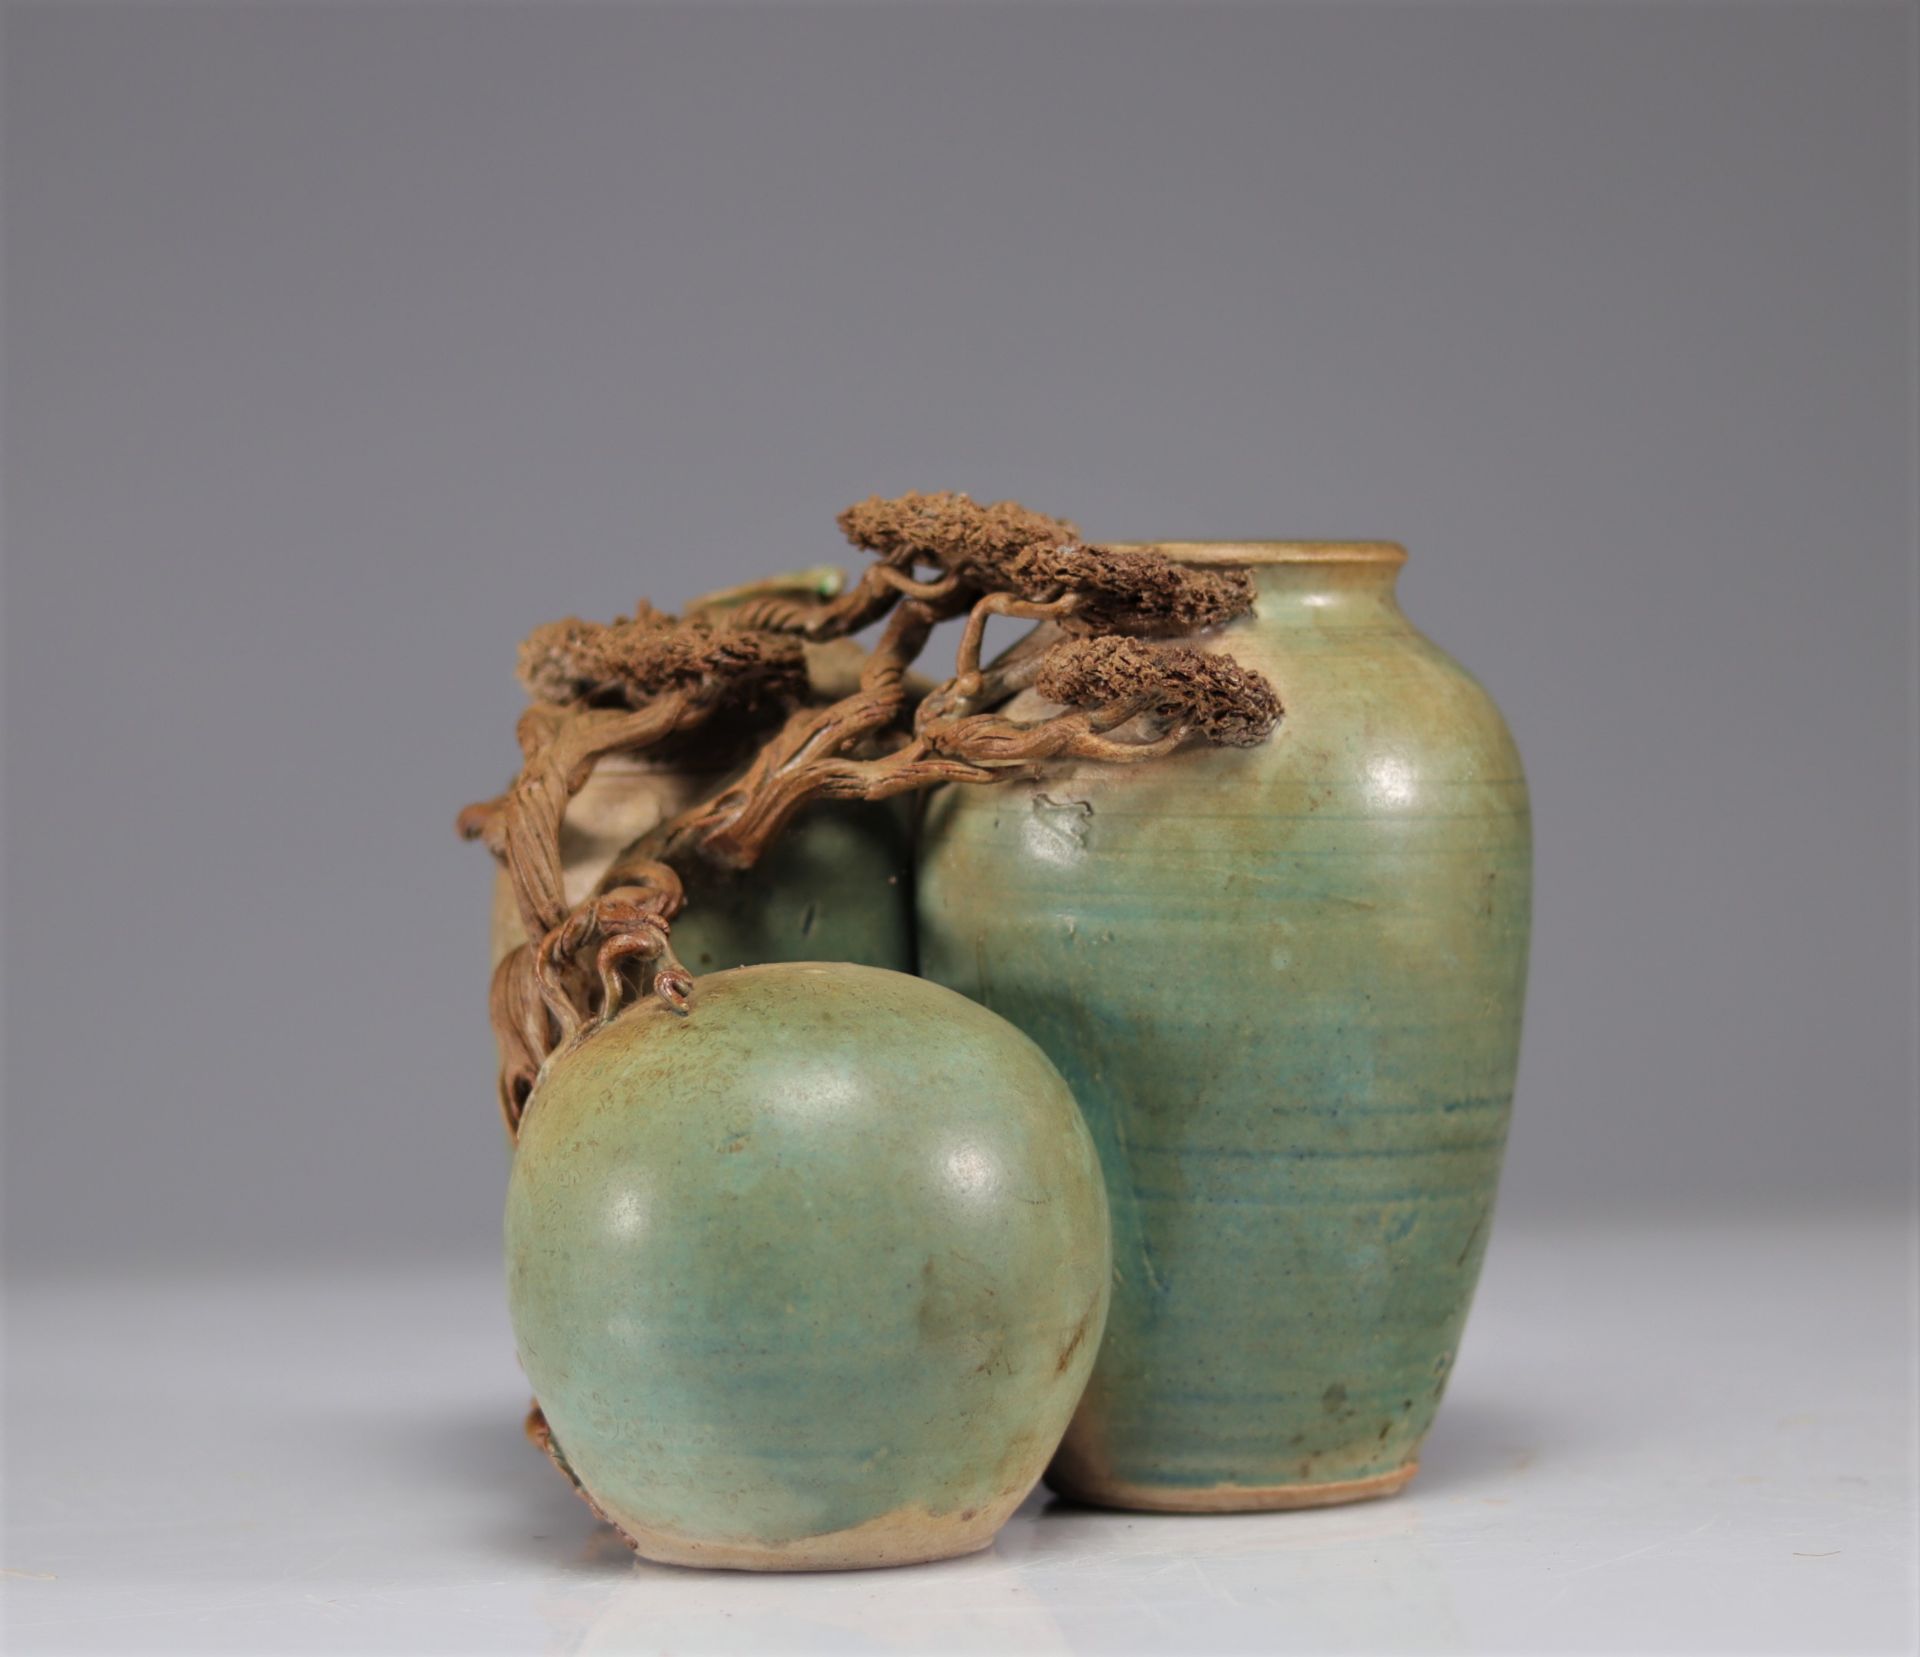 Japanese glazed earthenware vase